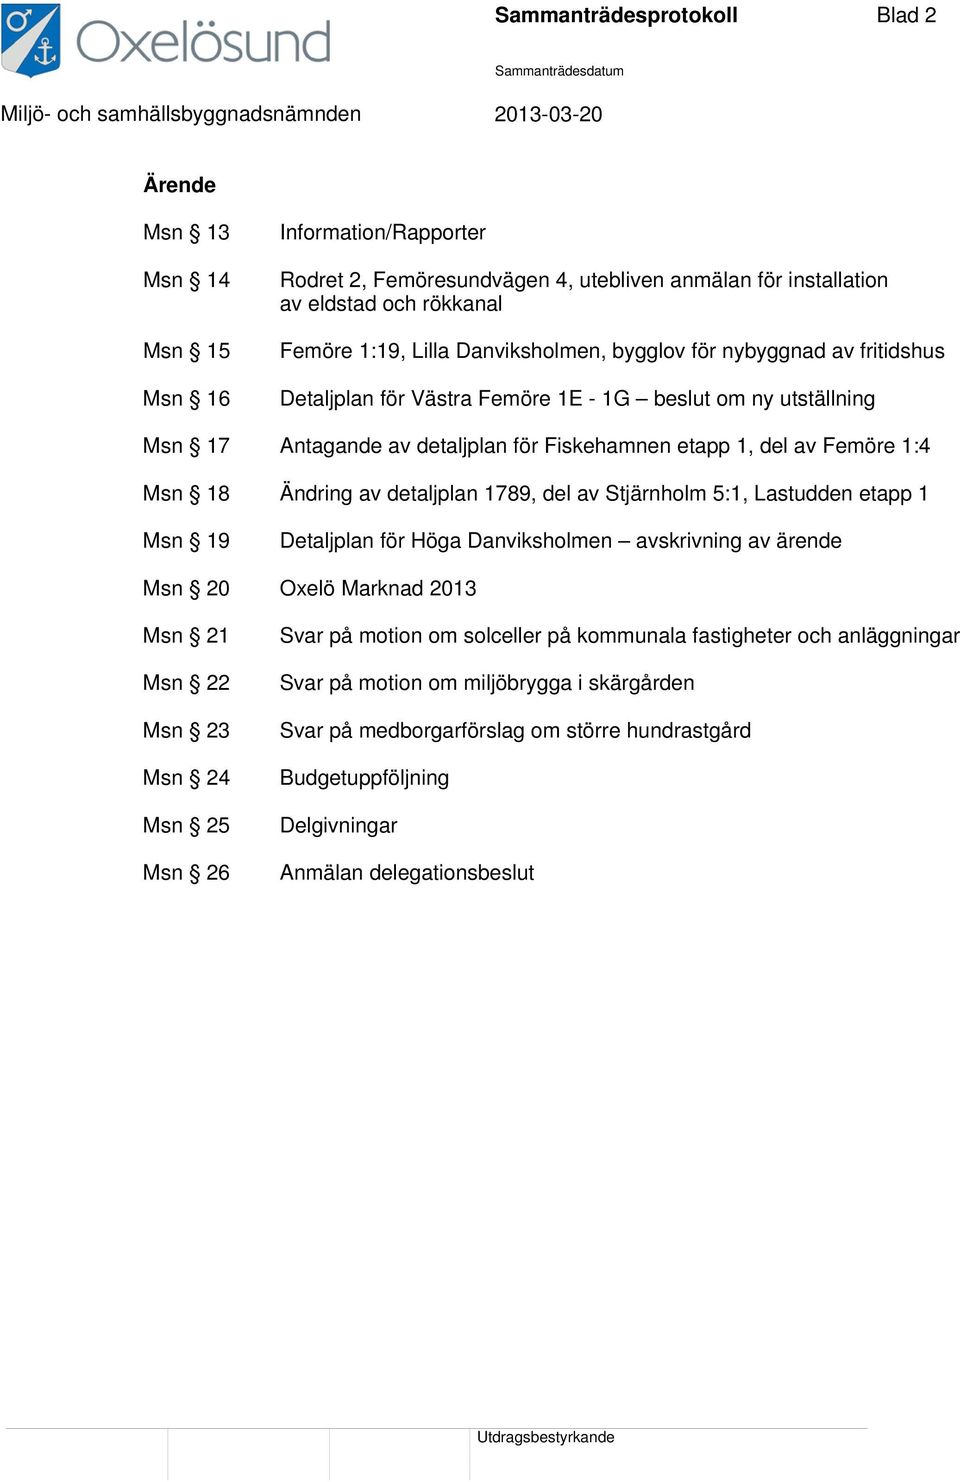 Ändring av detaljplan 1789, del av Stjärnholm 5:1, Lastudden etapp 1 Msn 19 Detaljplan för Höga Danviksholmen avskrivning av ärende Msn 20 Oxelö Marknad 2013 Msn 21 Msn 22 Msn 23 Msn 24 Msn 25 Msn 26